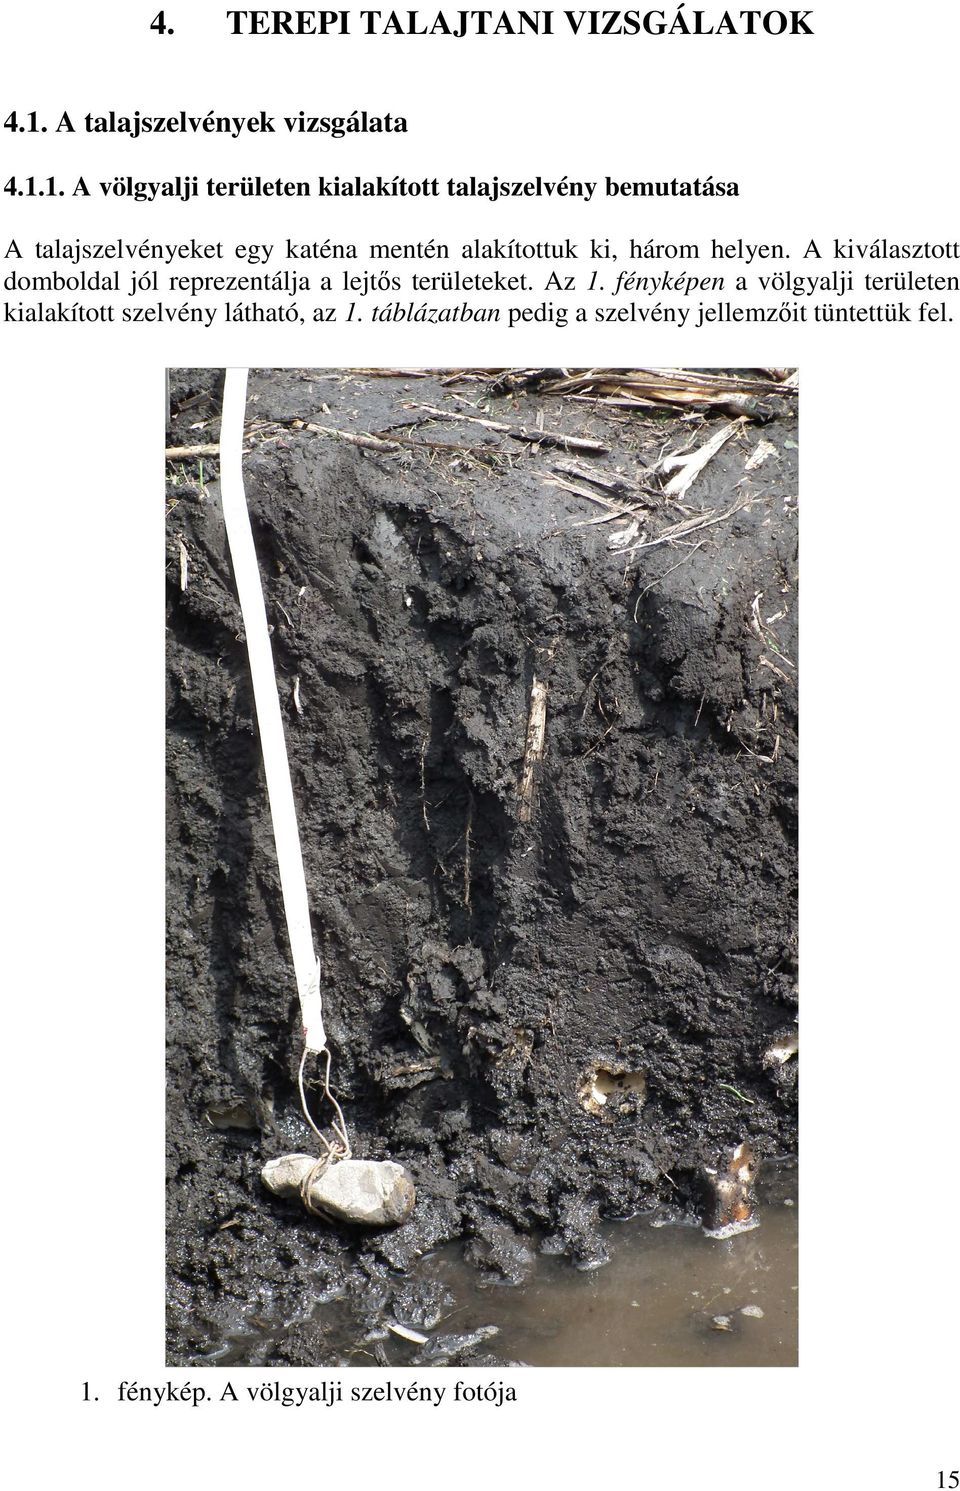 1. A völgyalji területen kialakított talajszelvény bemutatása A talajszelvényeket egy katéna mentén